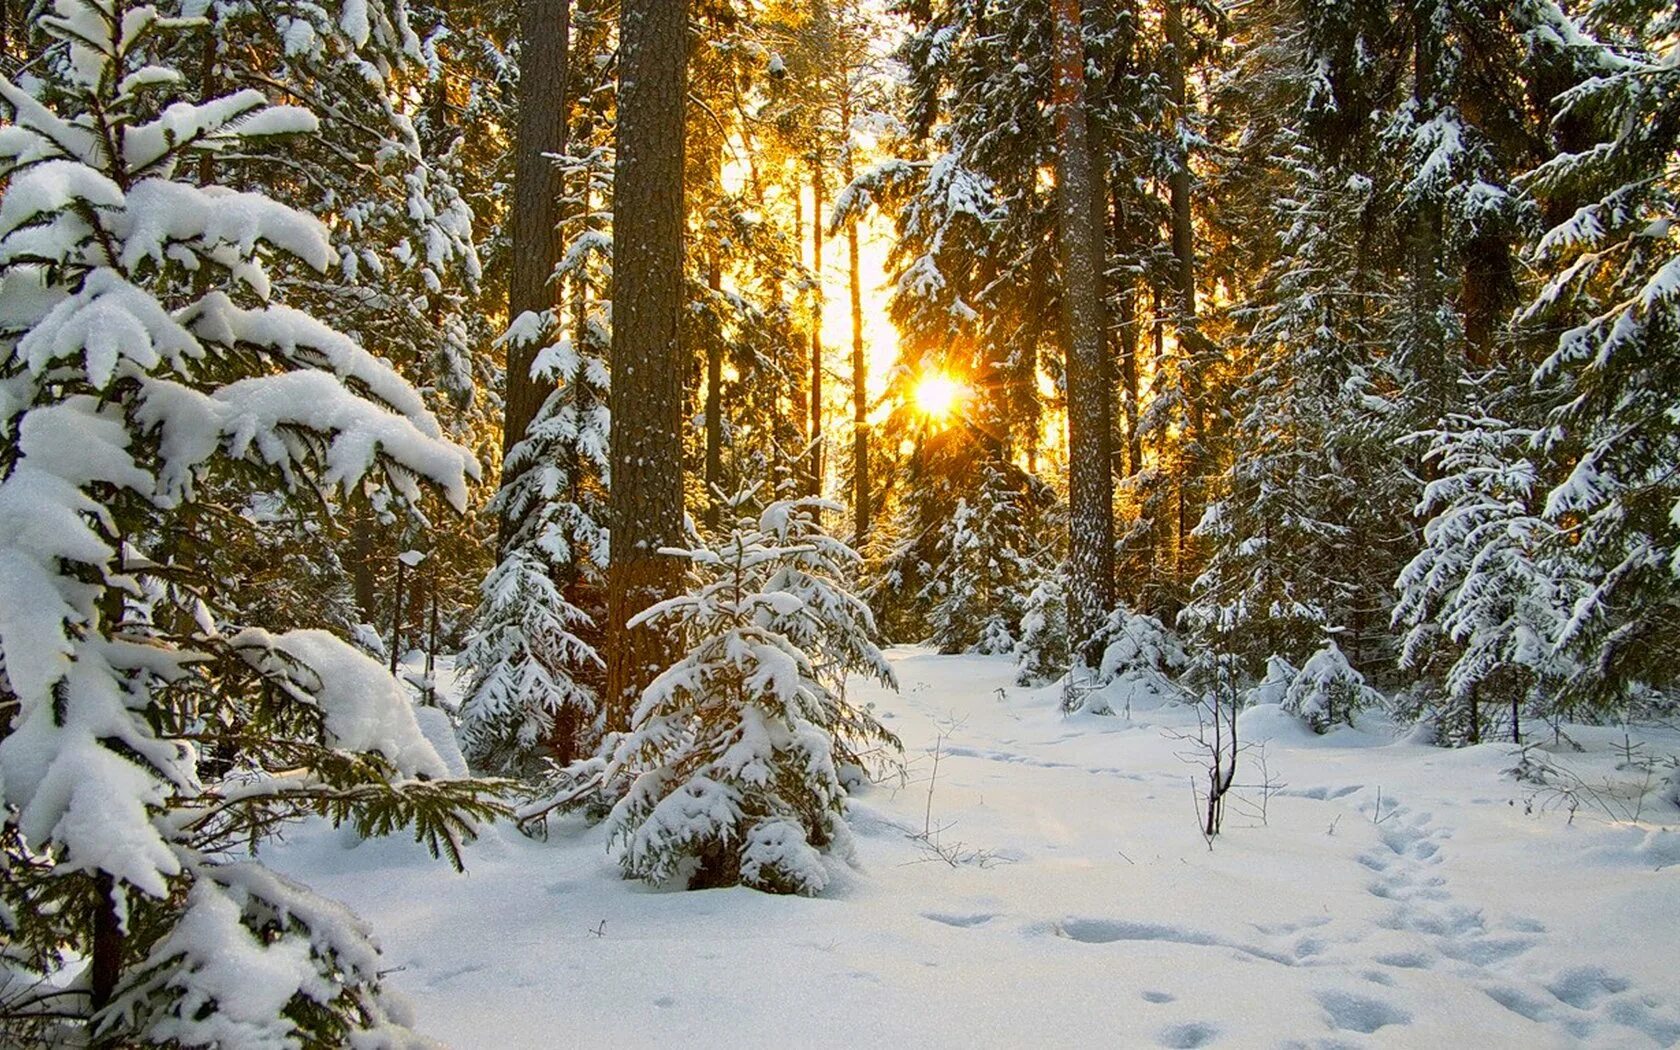 Фф и в морозном лесу навеки останусь. Зимний лес. Зимой в лесу. Зимние леса. Заснеженный лес.